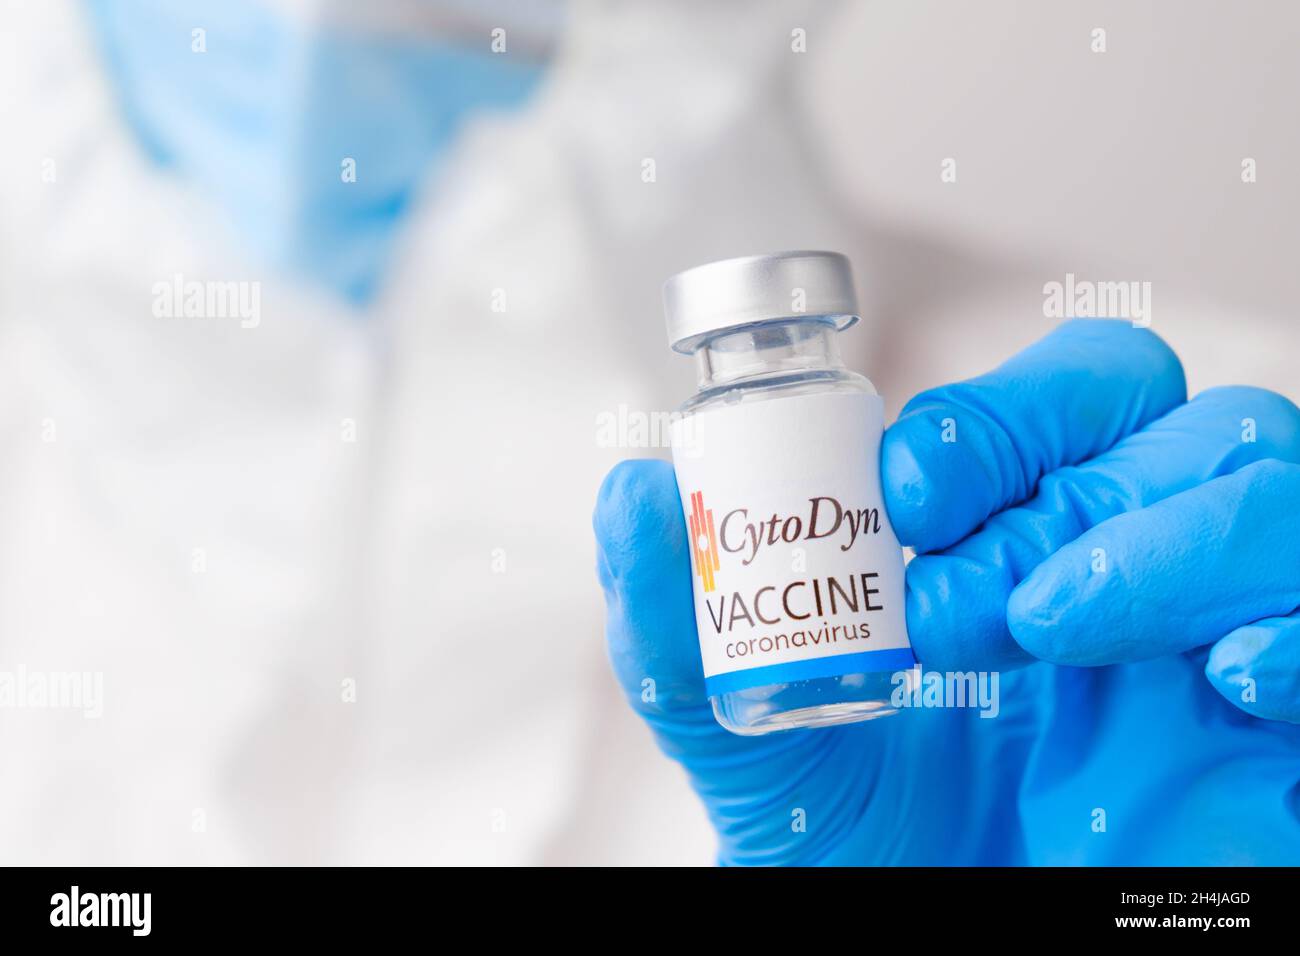 Vaccino Cato Dyn contro SARS-Cov-2, coronavirus o Covid-19 messo sul tavolo da un operatore medico nei guanti di gomma, marzo 2021, San Francisco, USA Foto Stock